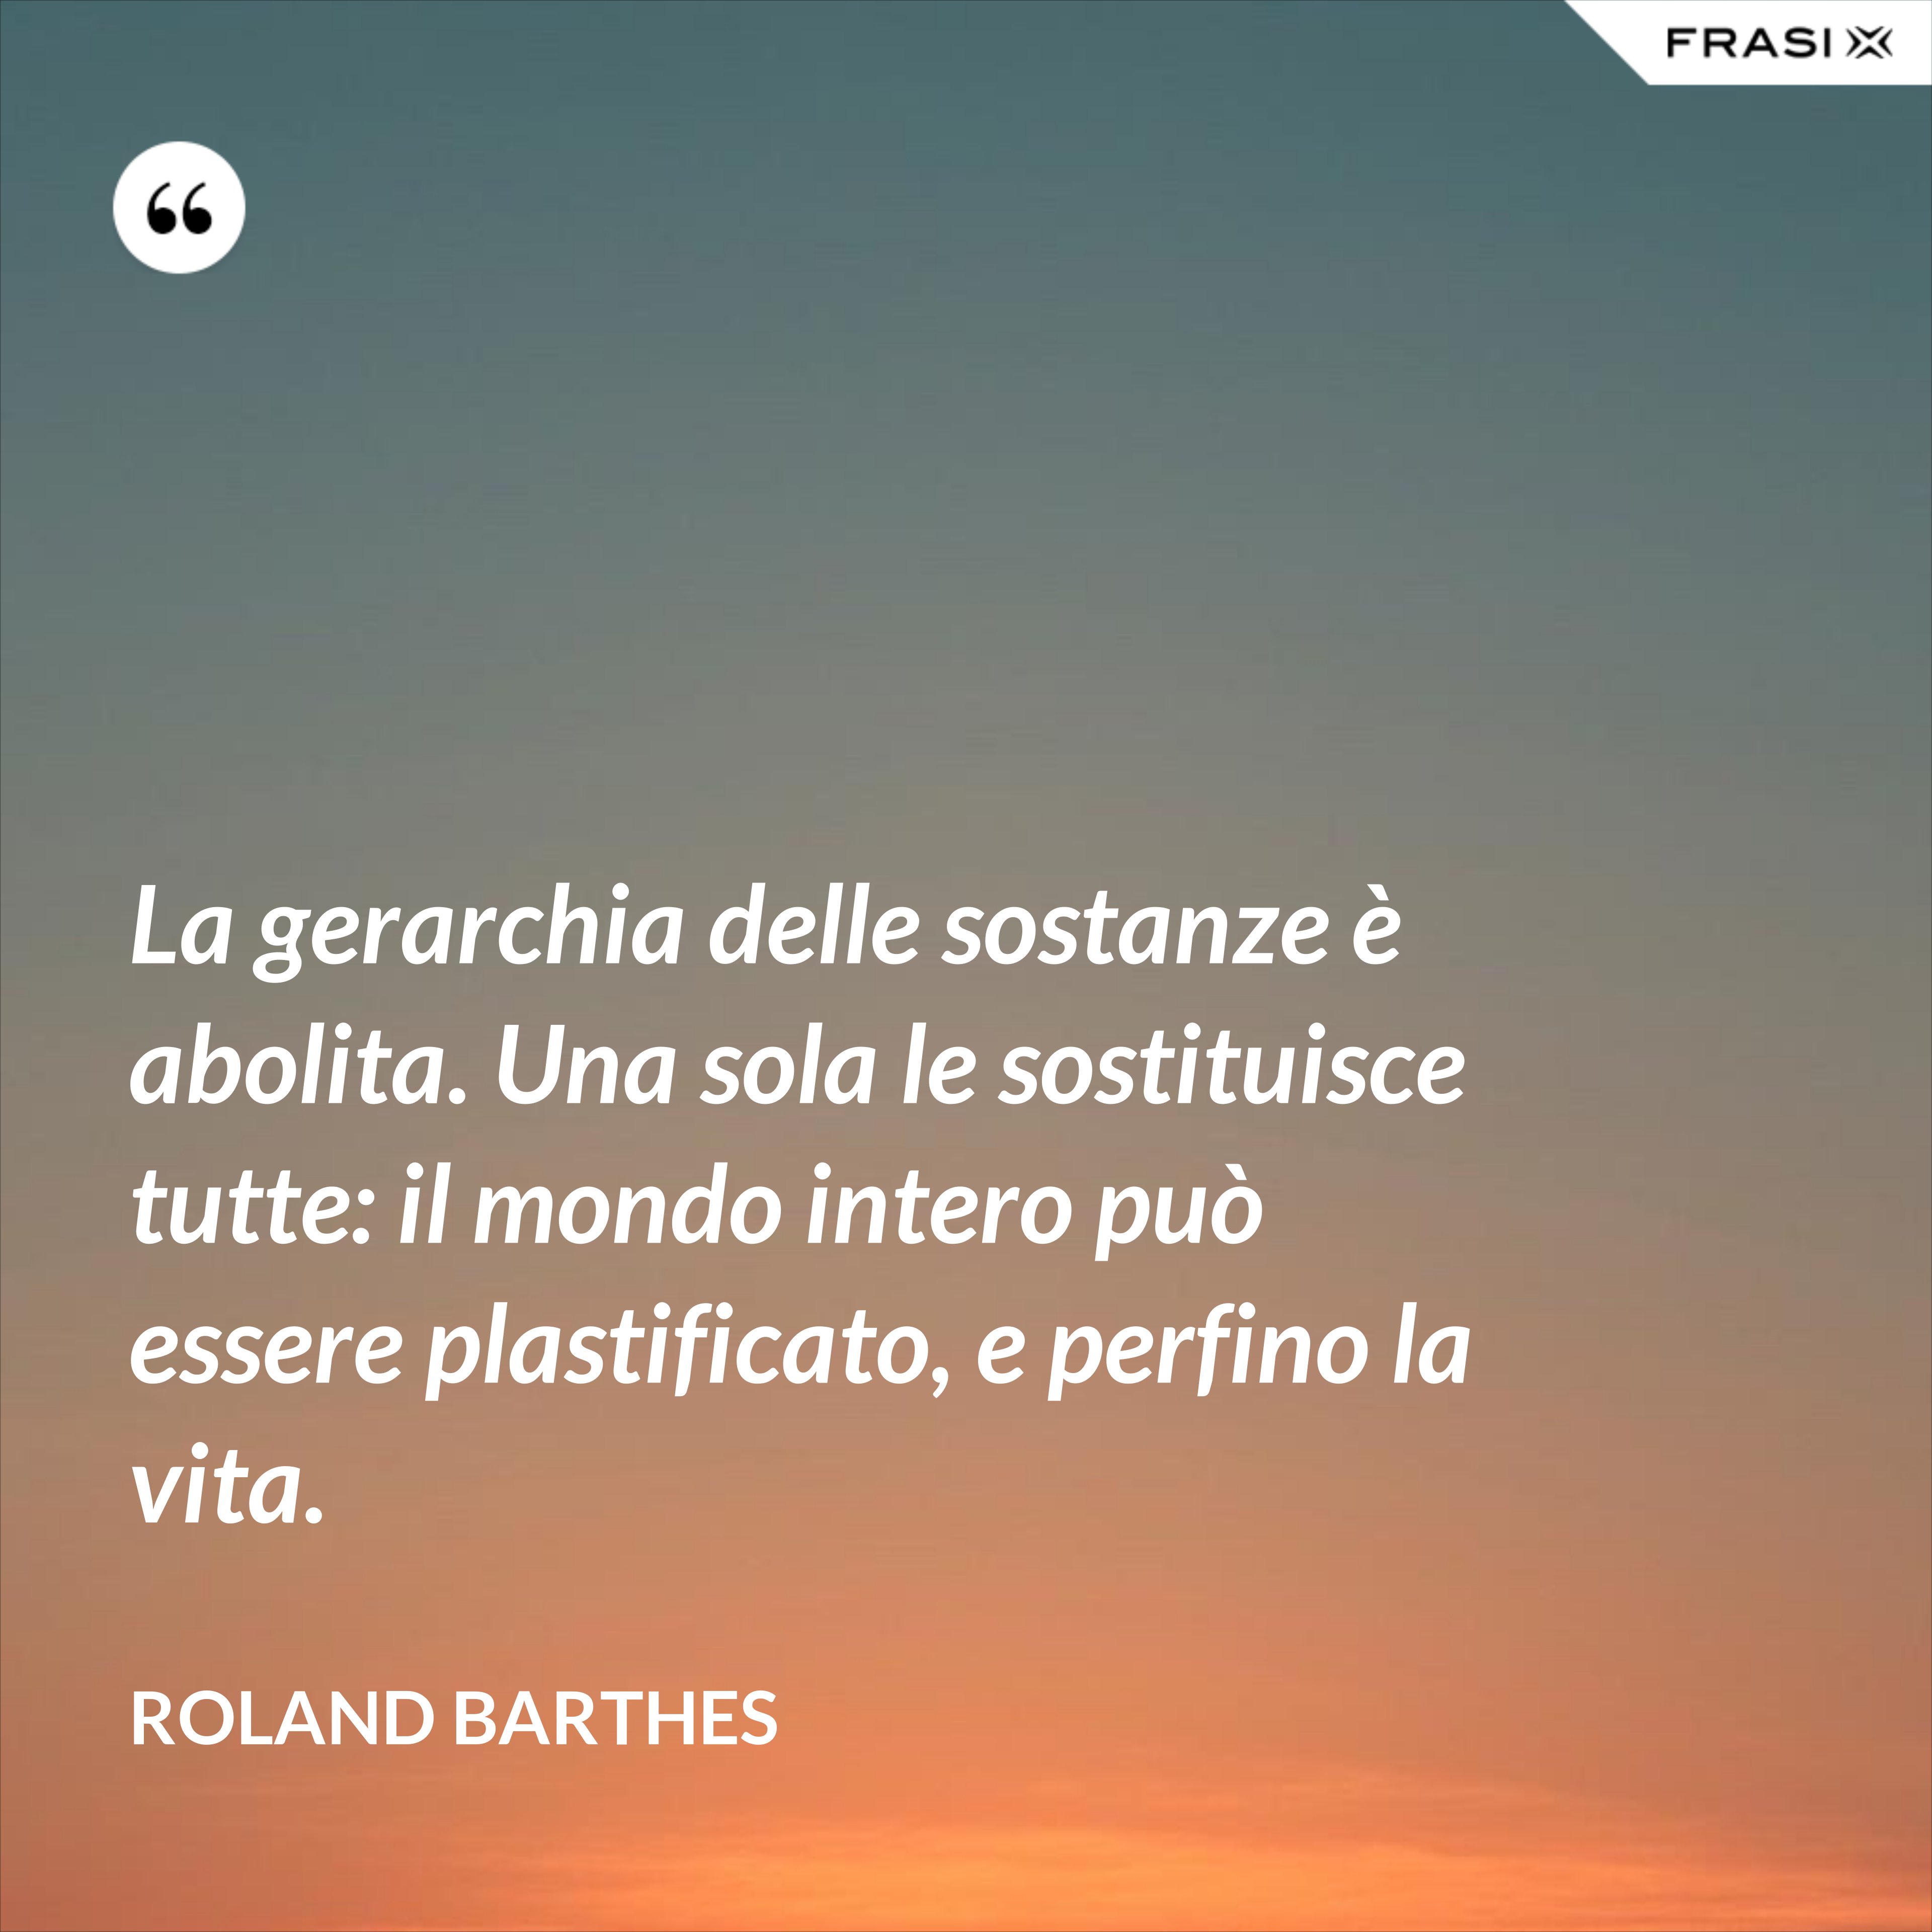 La gerarchia delle sostanze è abolita. Una sola le sostituisce tutte: il mondo intero può essere plastificato, e perfino la vita. - Roland Barthes